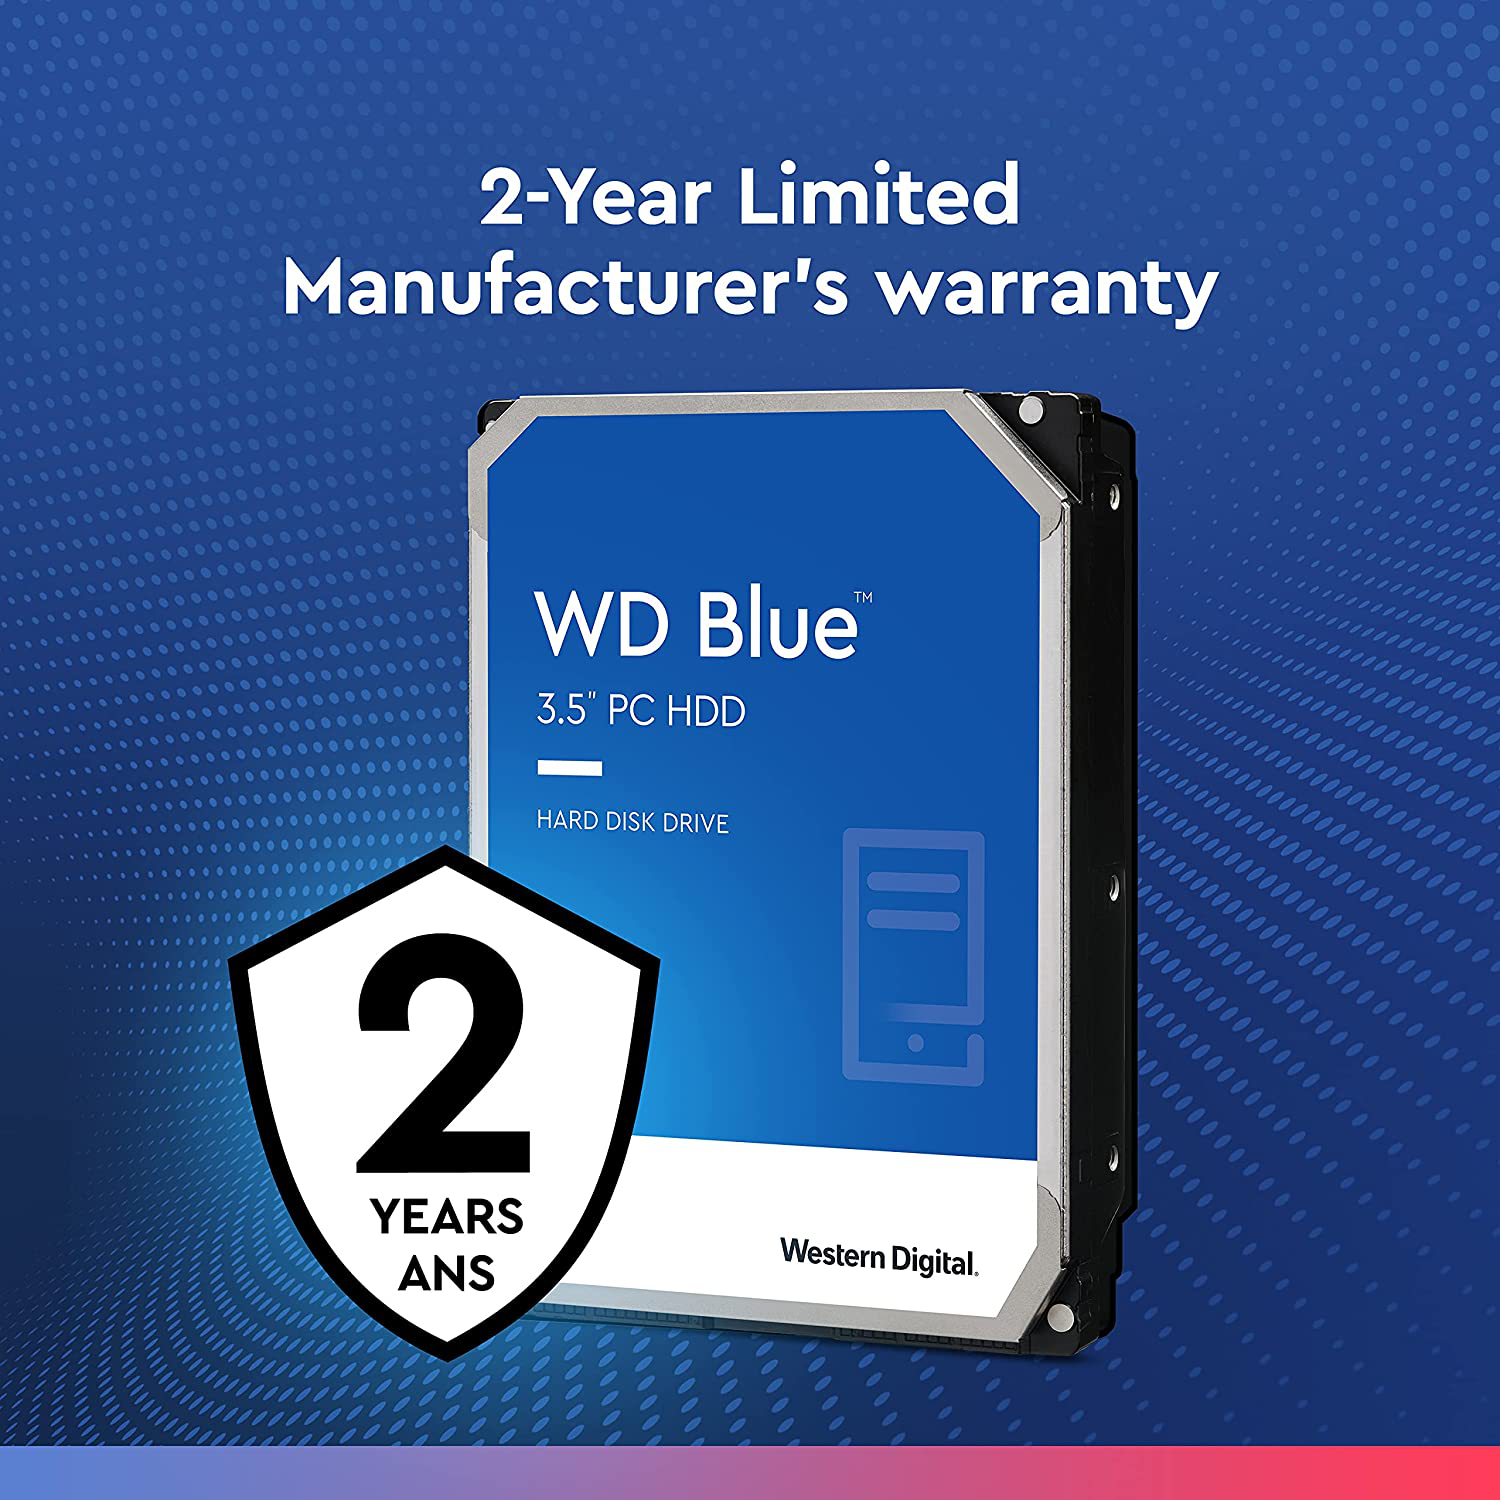 Western Digital 2TB WD Blue PC Hard Drive - 7200 RPM Class, SATA 6 Gb/S, 256 MB Cache, 3.5" - WD20EZBX